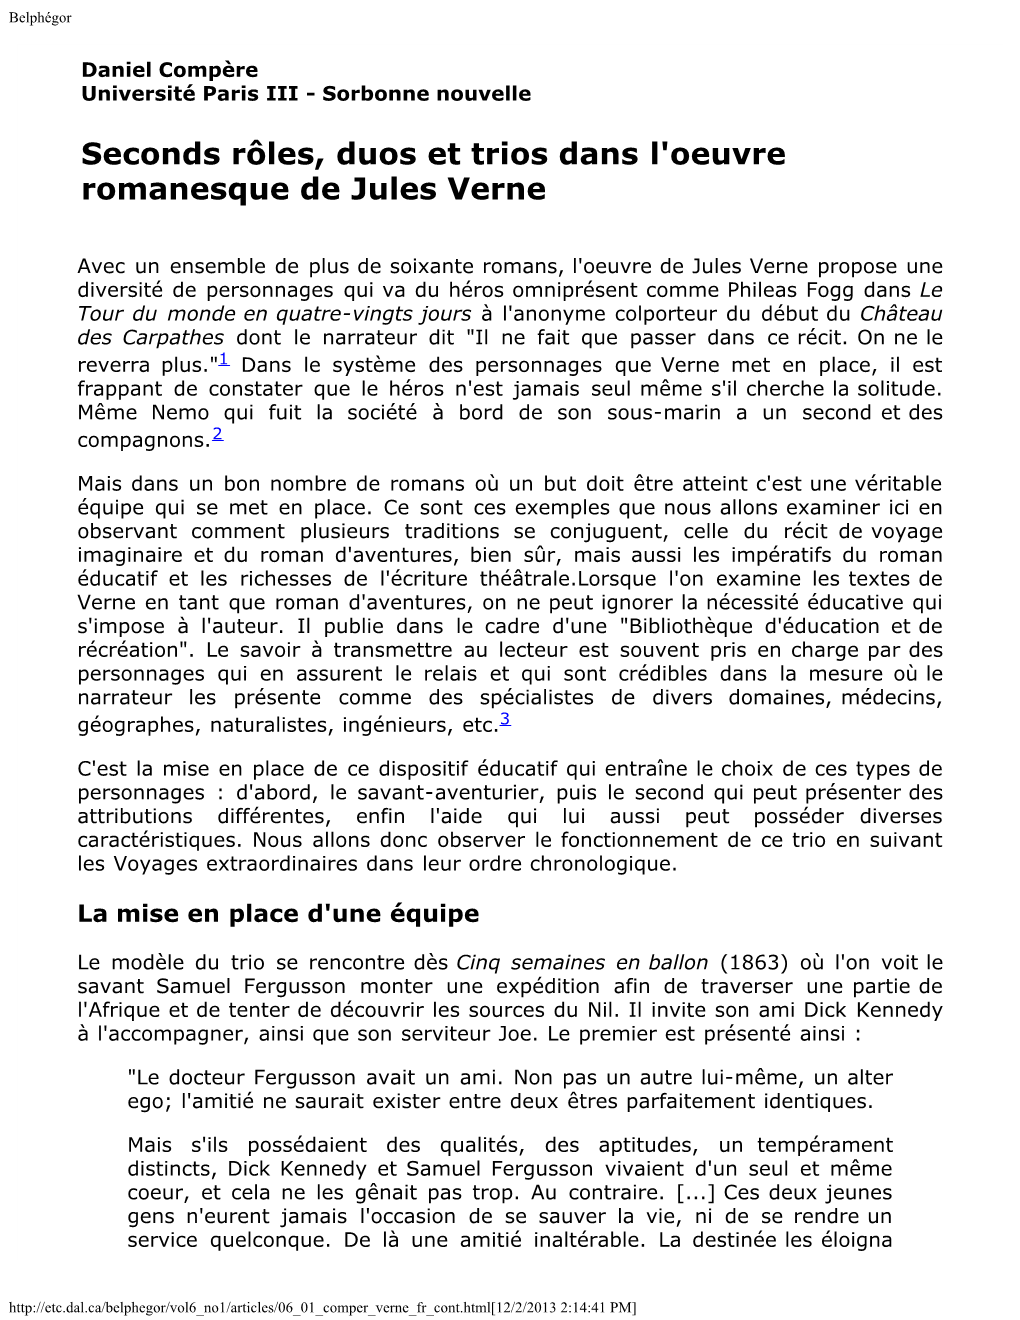 Seconds Rôles, Duos Et Trios Dans L'oeuvre Romanesque De Jules Verne